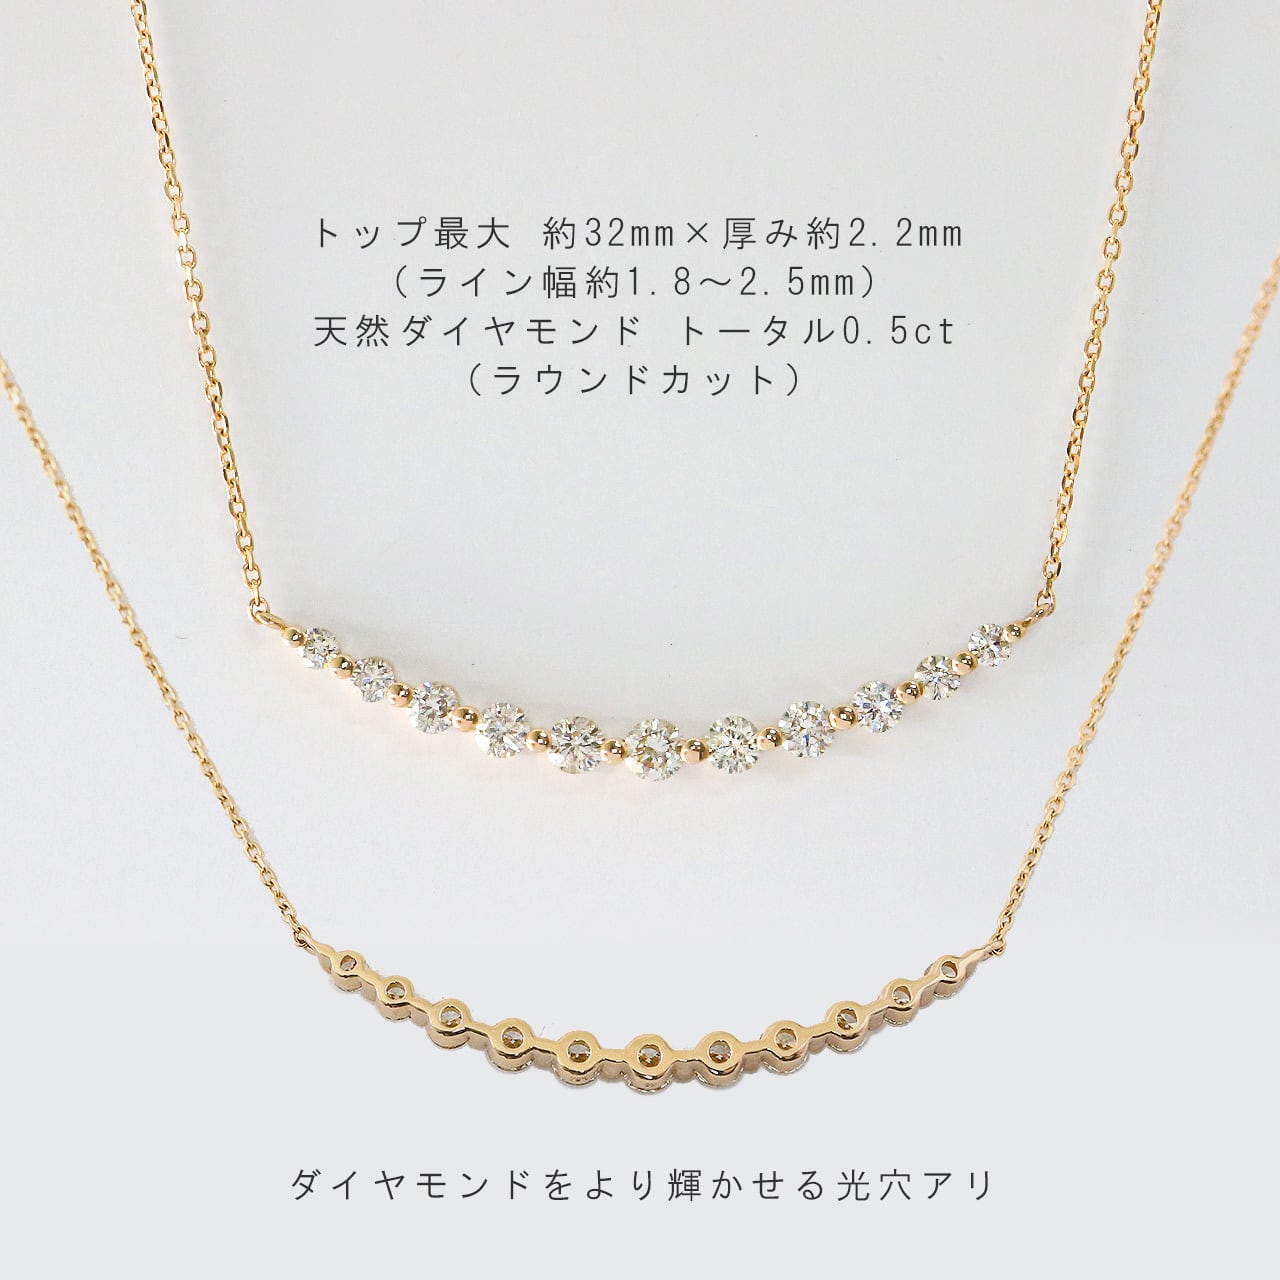 【 ハイヒール 】 PT900 k18 天然 ダイヤモンド ネックレストップ